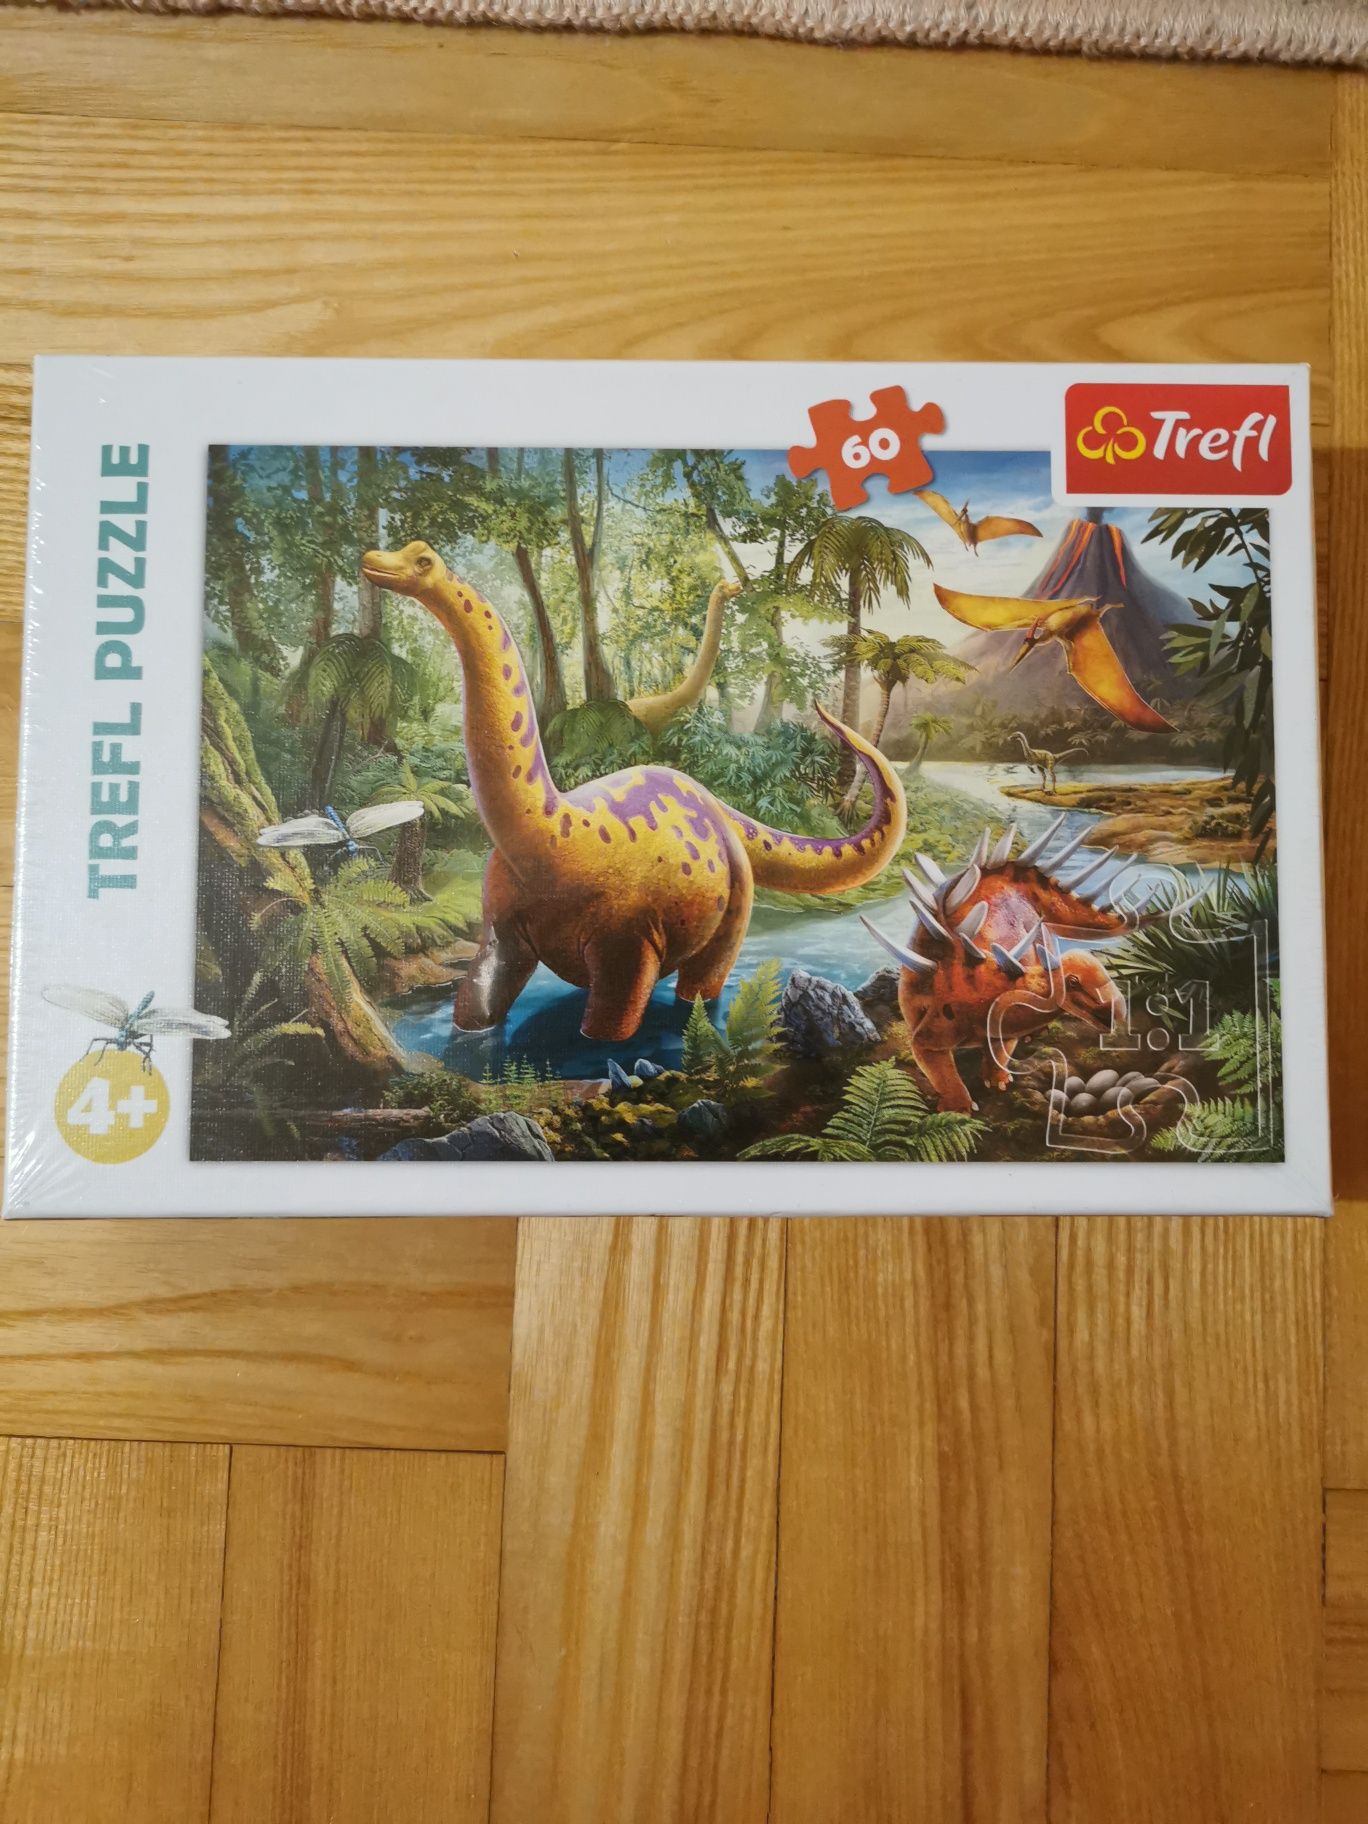 Puzzle Trefl 60, nr 17319, Wędrówka dinozaurów